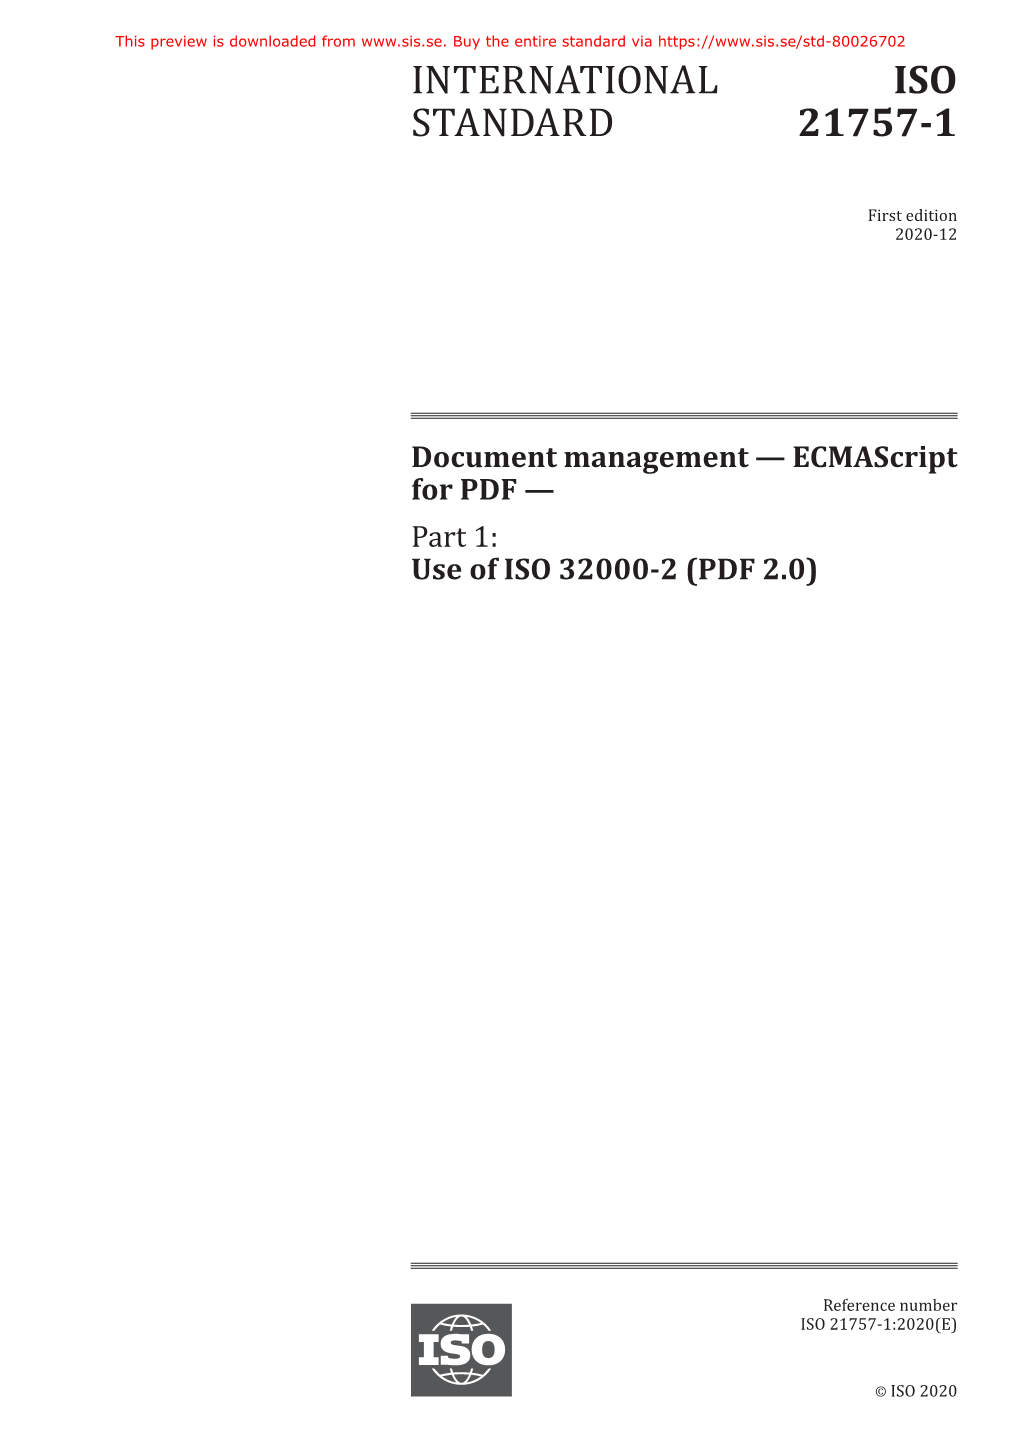 International Standard Iso 21757-1:2020(E)